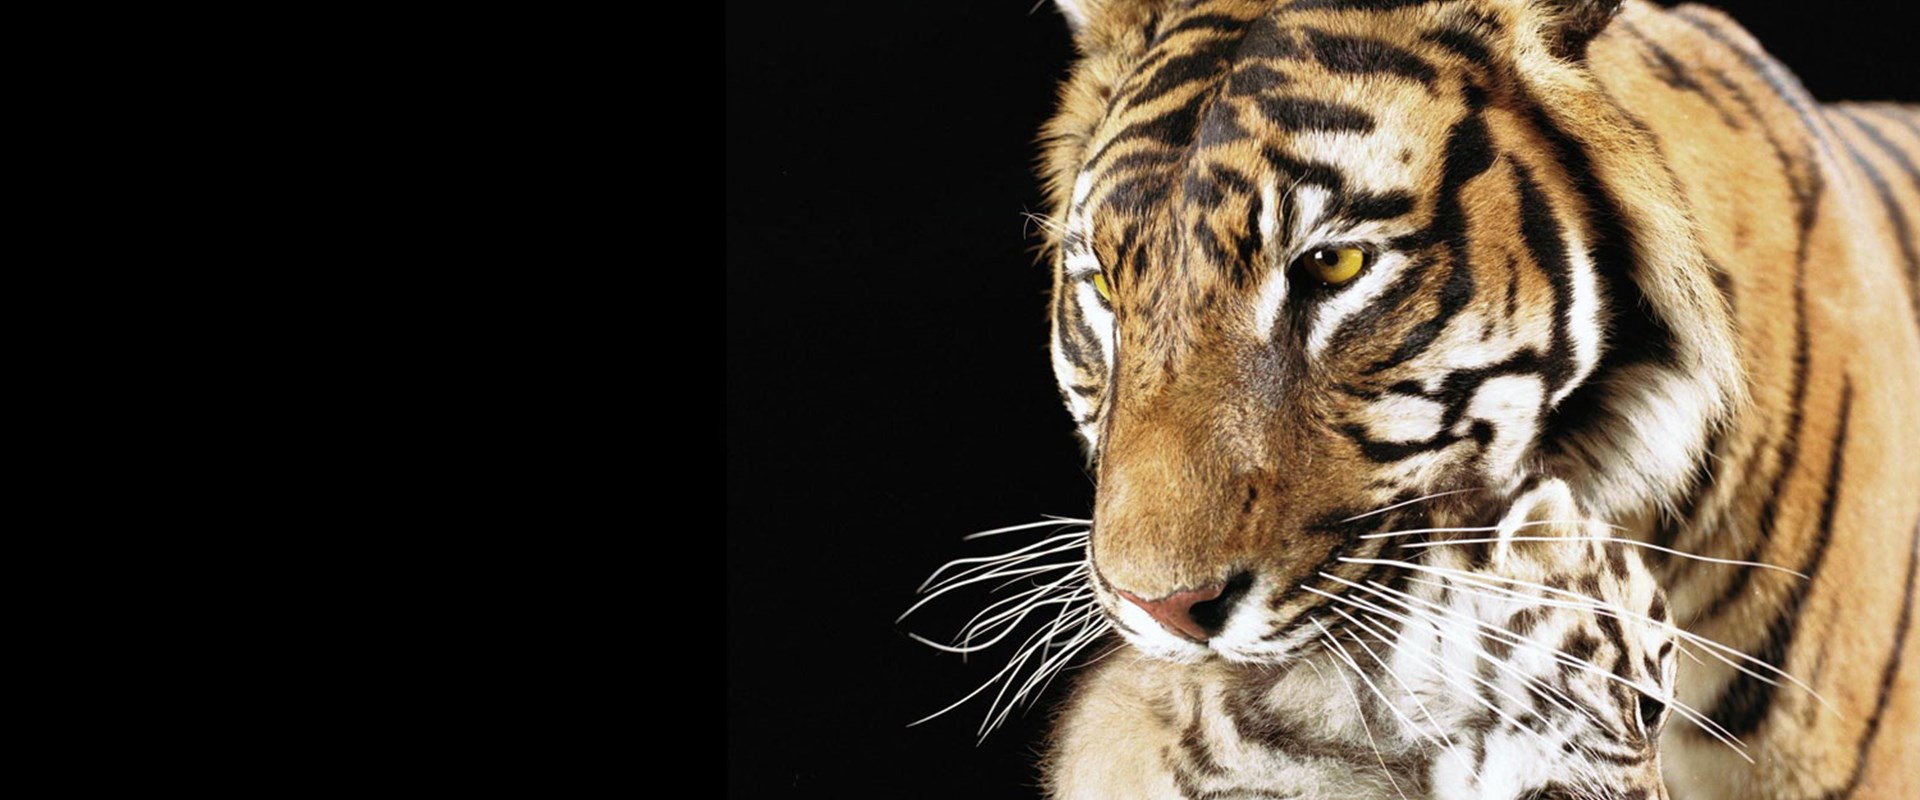 Sumatran Tiger2